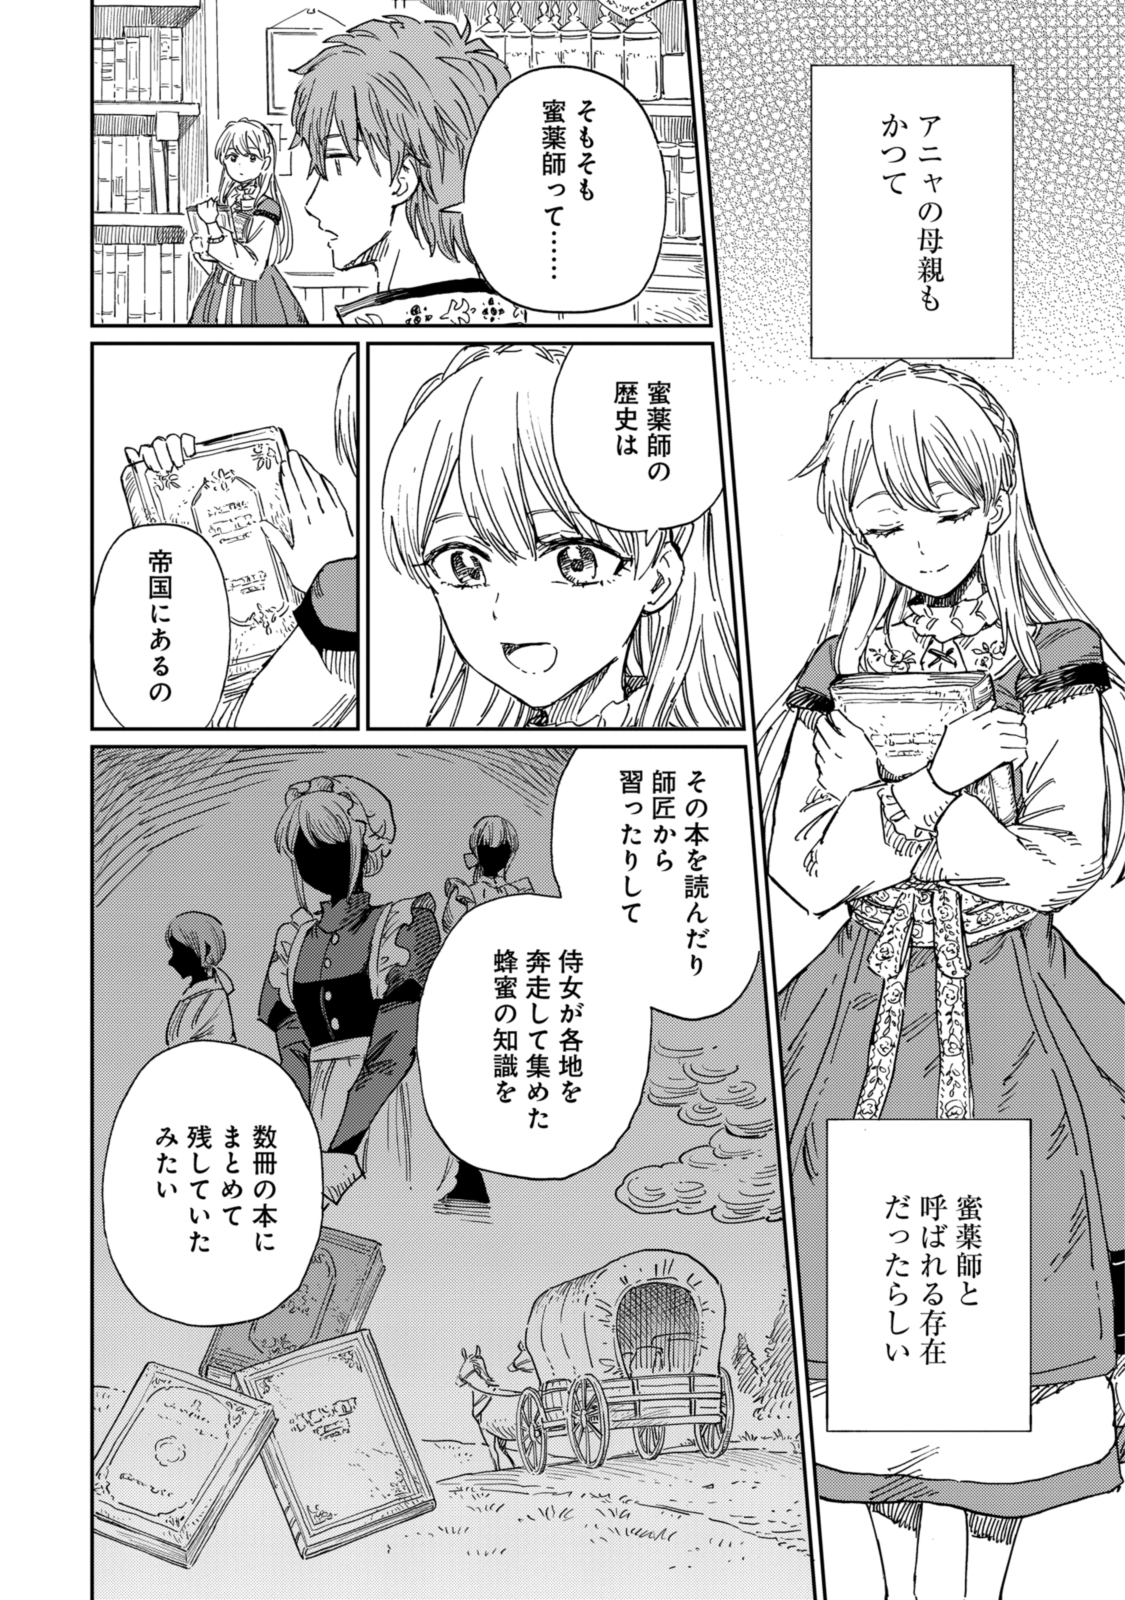 Youhou-ka to Mitsu Kusushi no Hanayome - Chapter 7.2 - Page 4